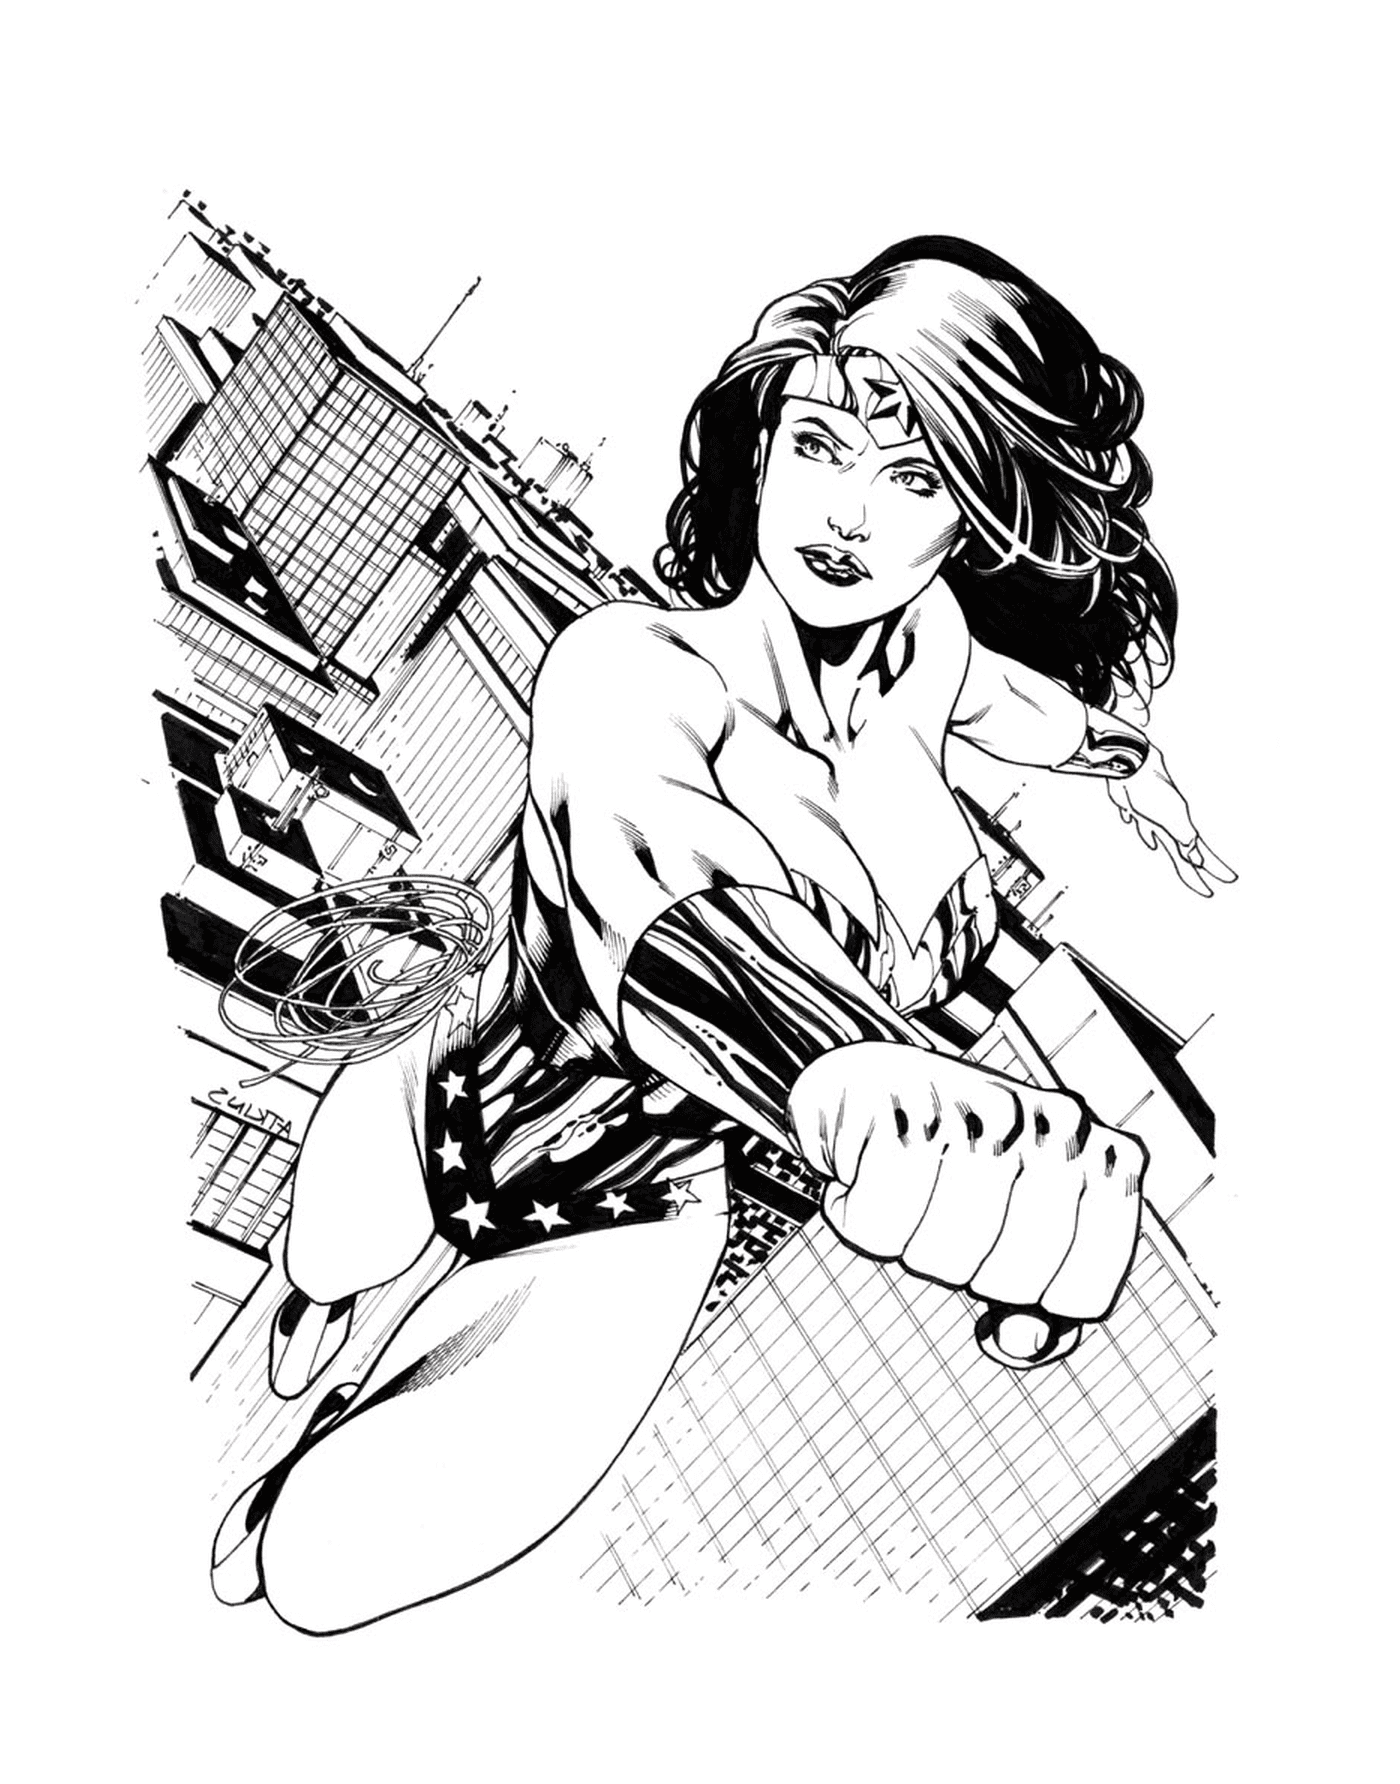  Wonder Woman's Sketch by Ratkins 